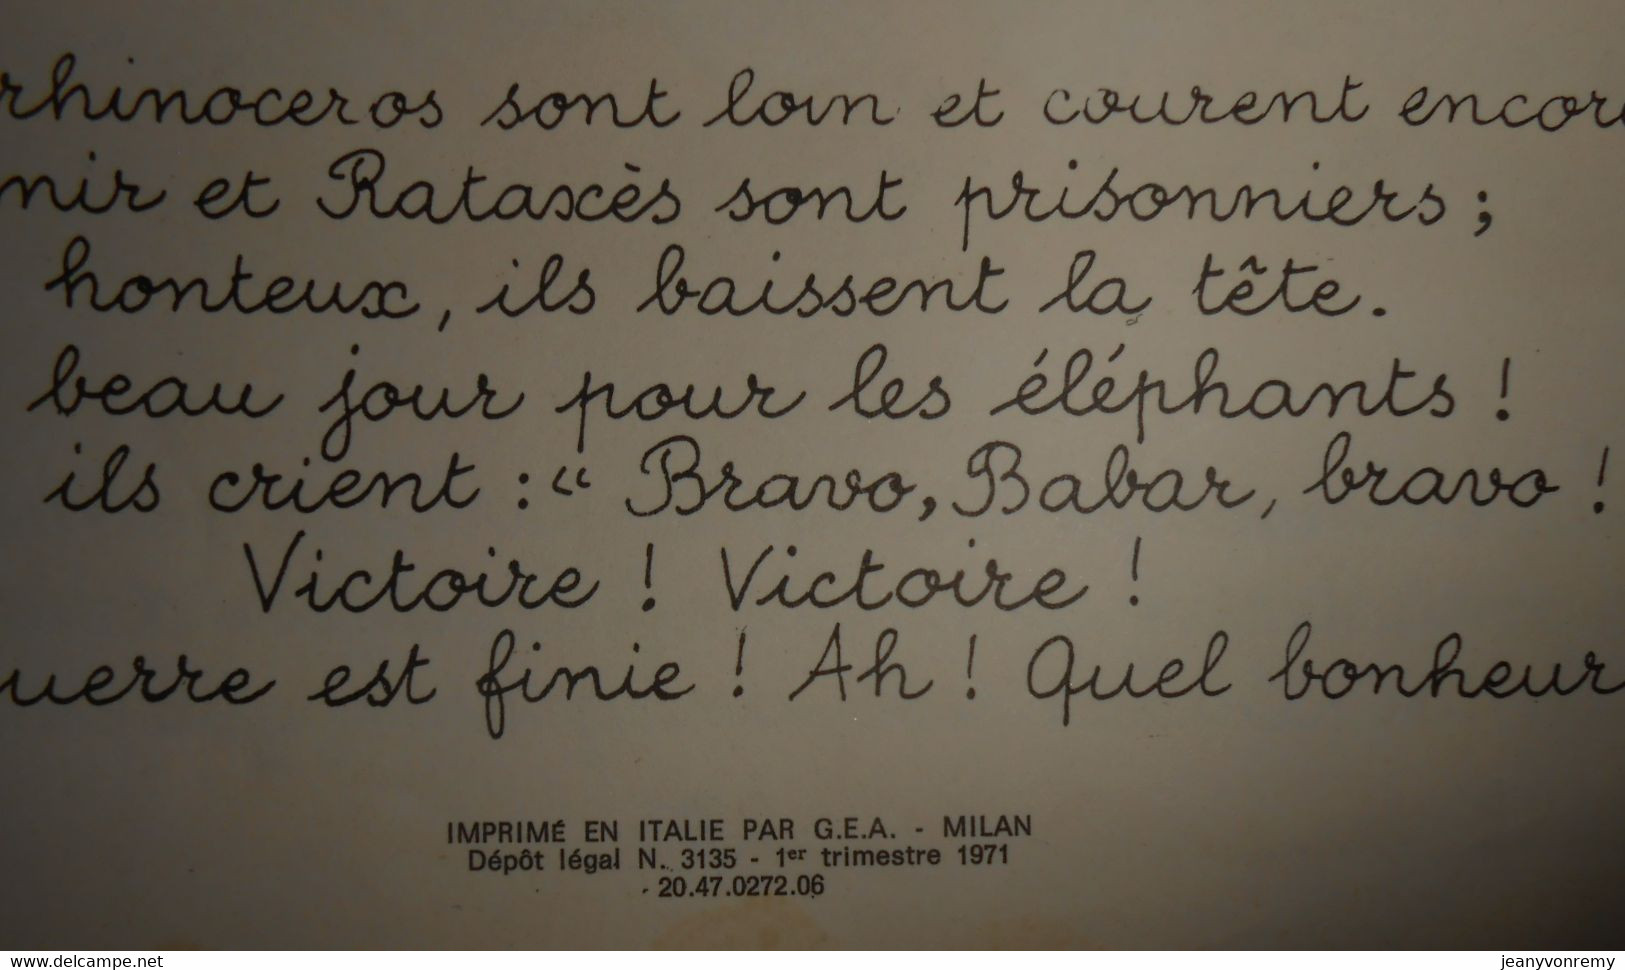 Le voyage de Babar. Jean de Brunhoff. 1971